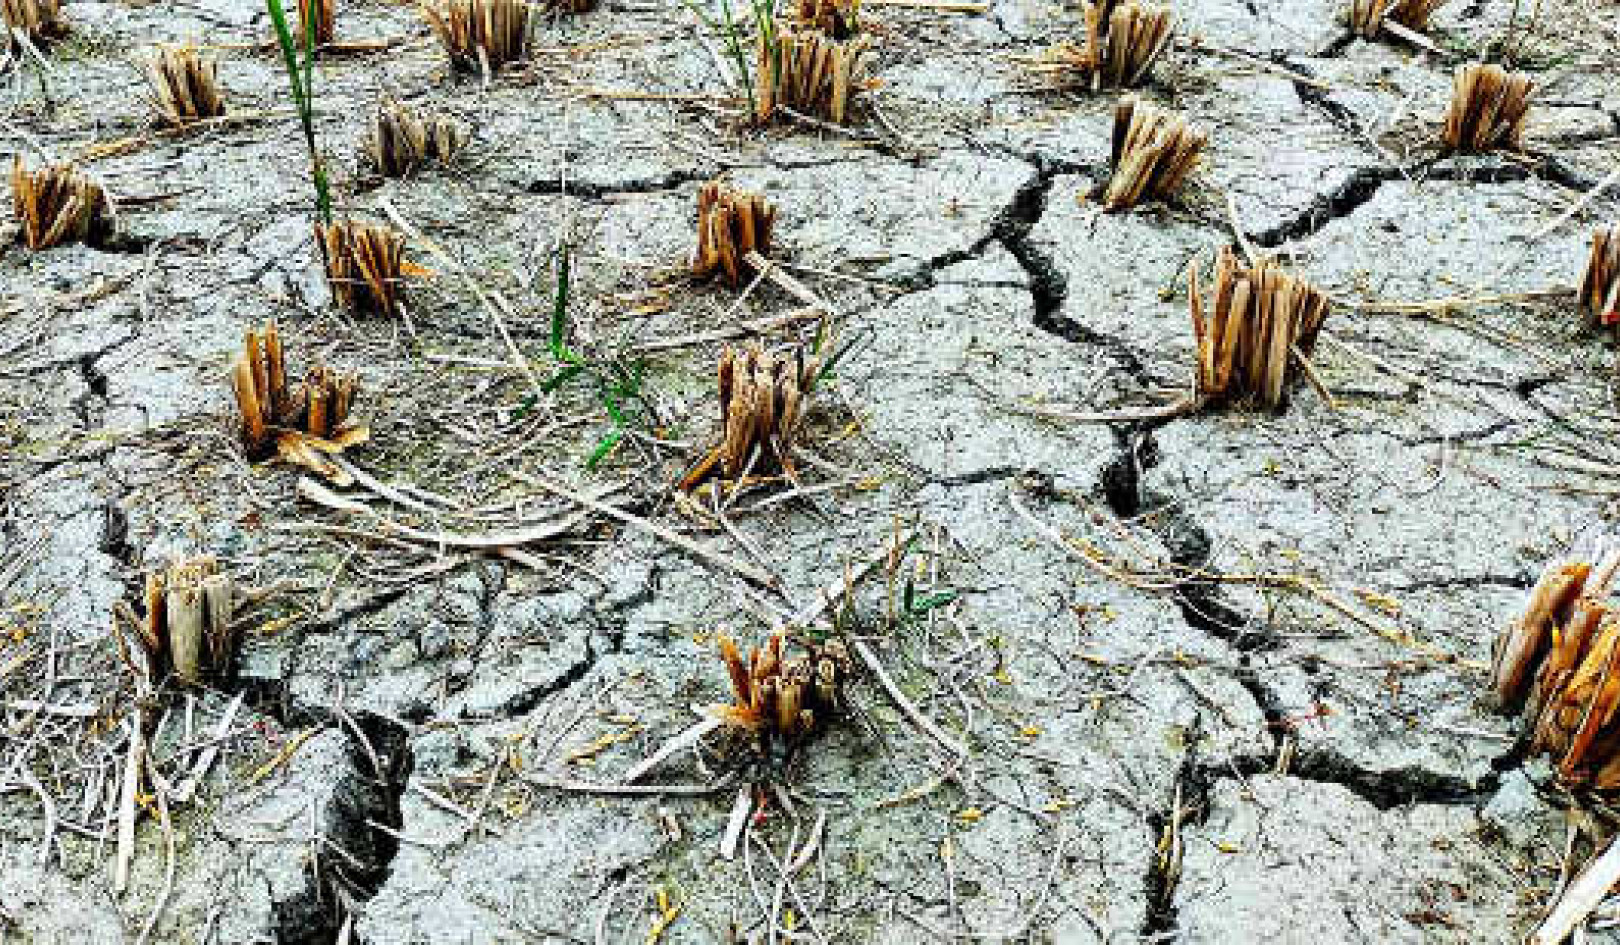 Είναι καιρός να αλλάξουμε τον ορισμό της ξηρασίας σε κανονικό;